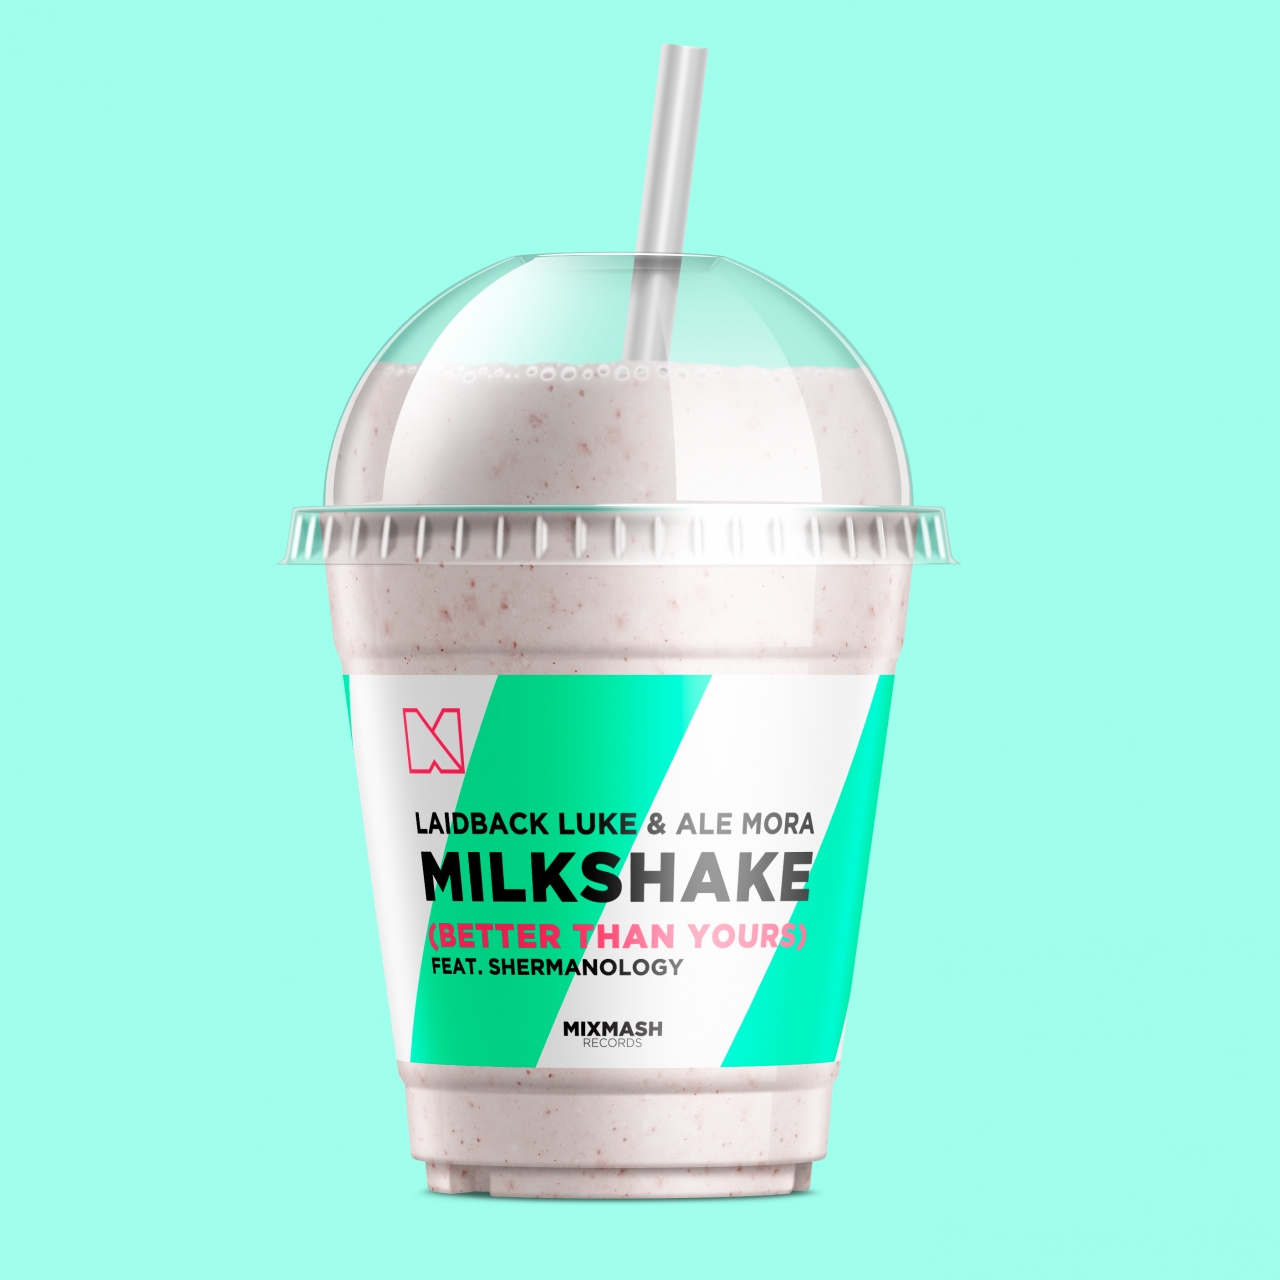 Milkshake (Better Than Yours)